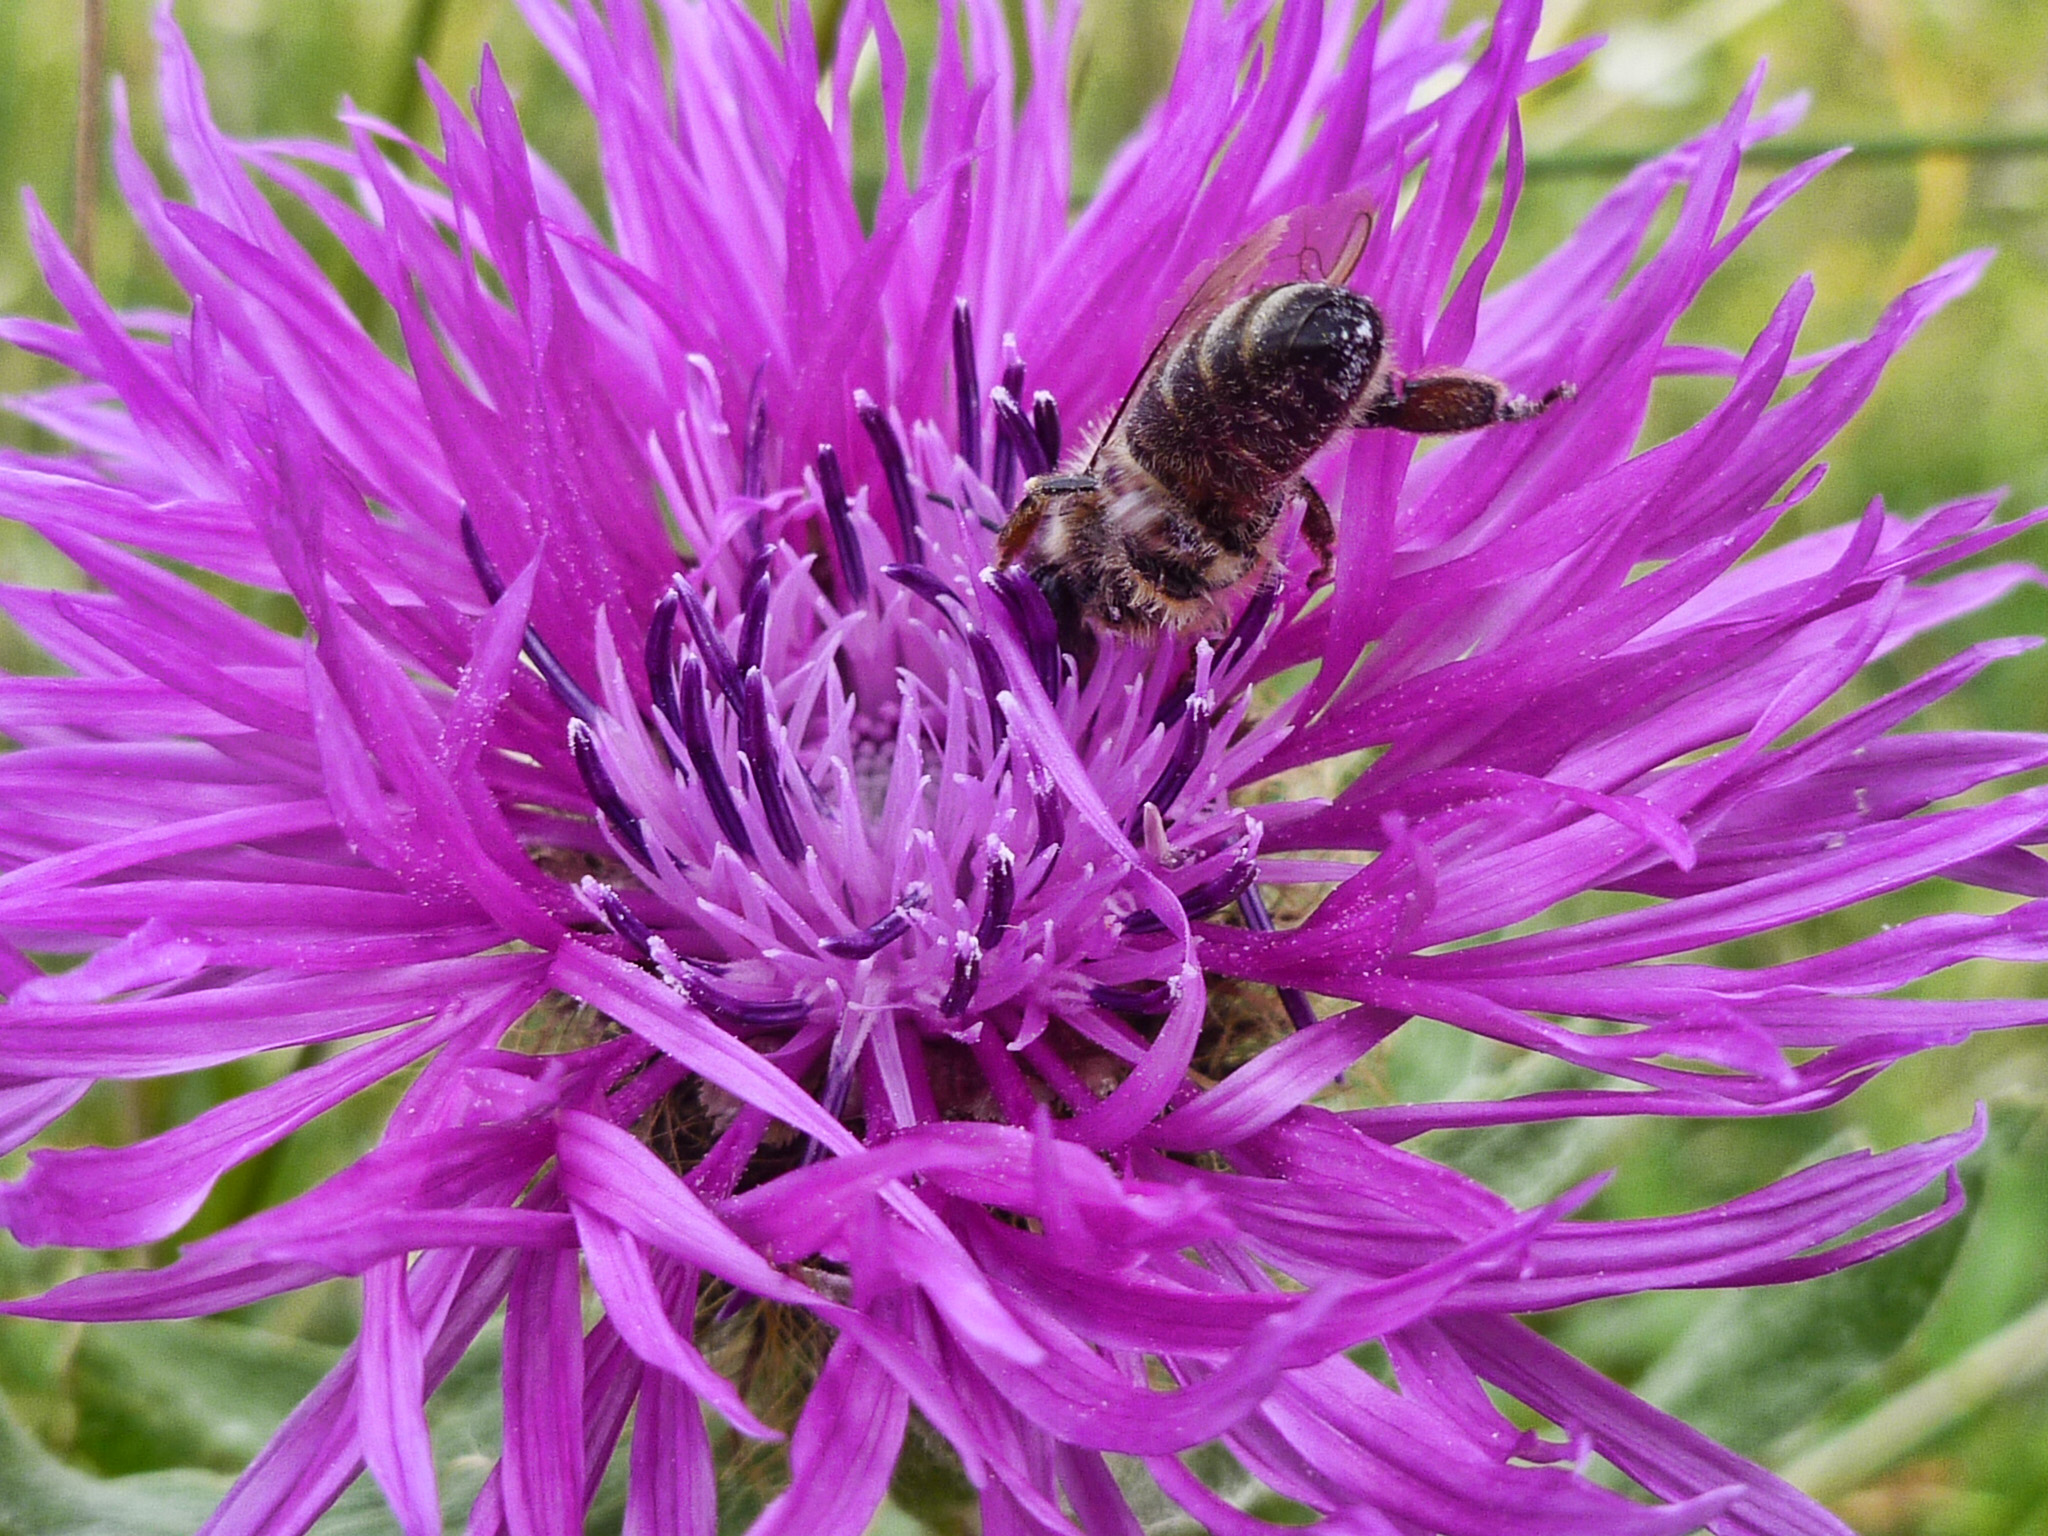 F06-Centauree-avec-abeille-de-Nathalie-Canas.jpg